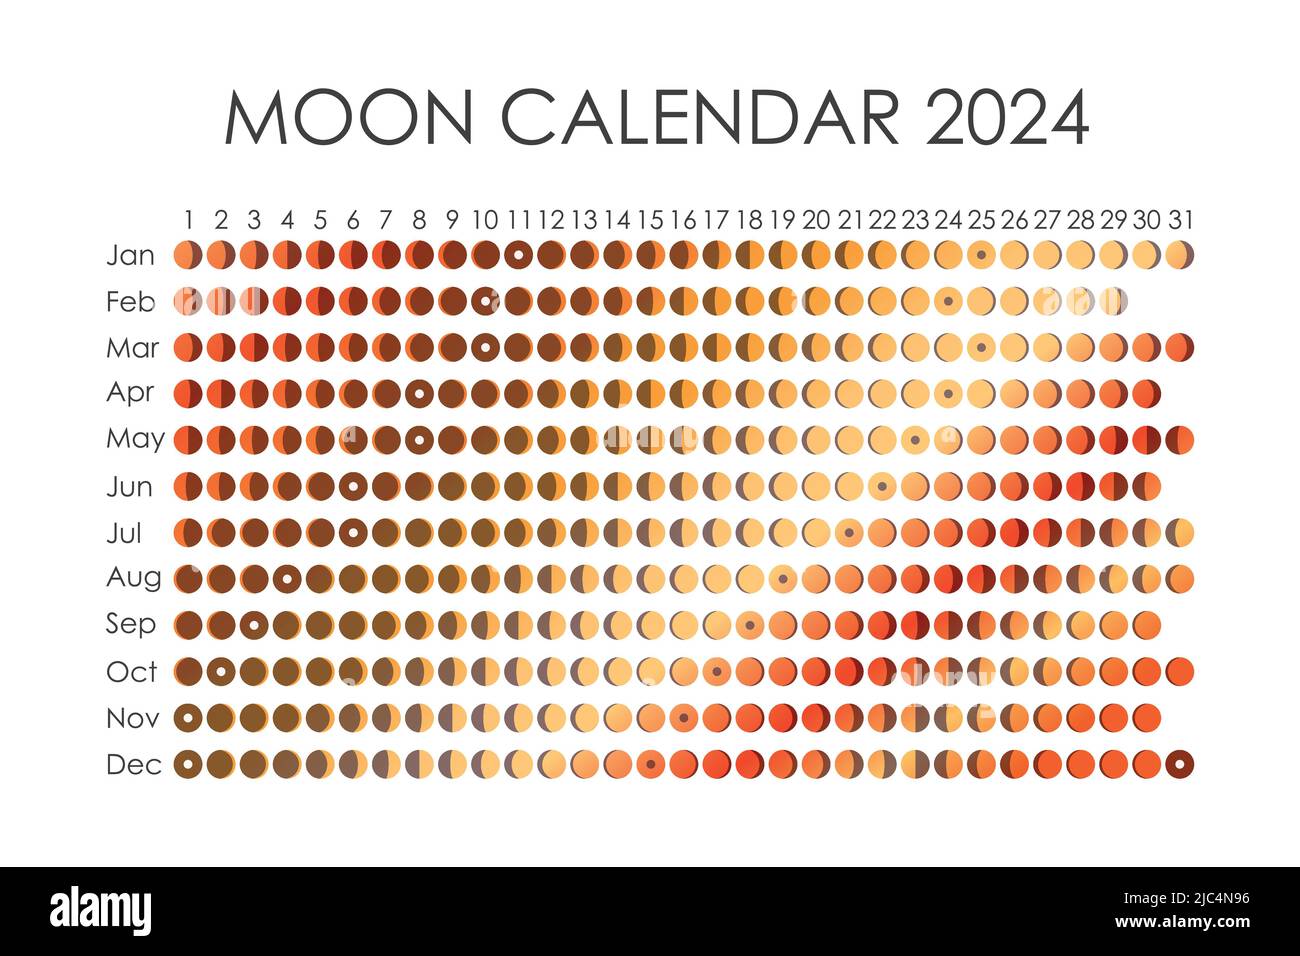 2024 Calendario lunar. Diseño de calendario astrológico